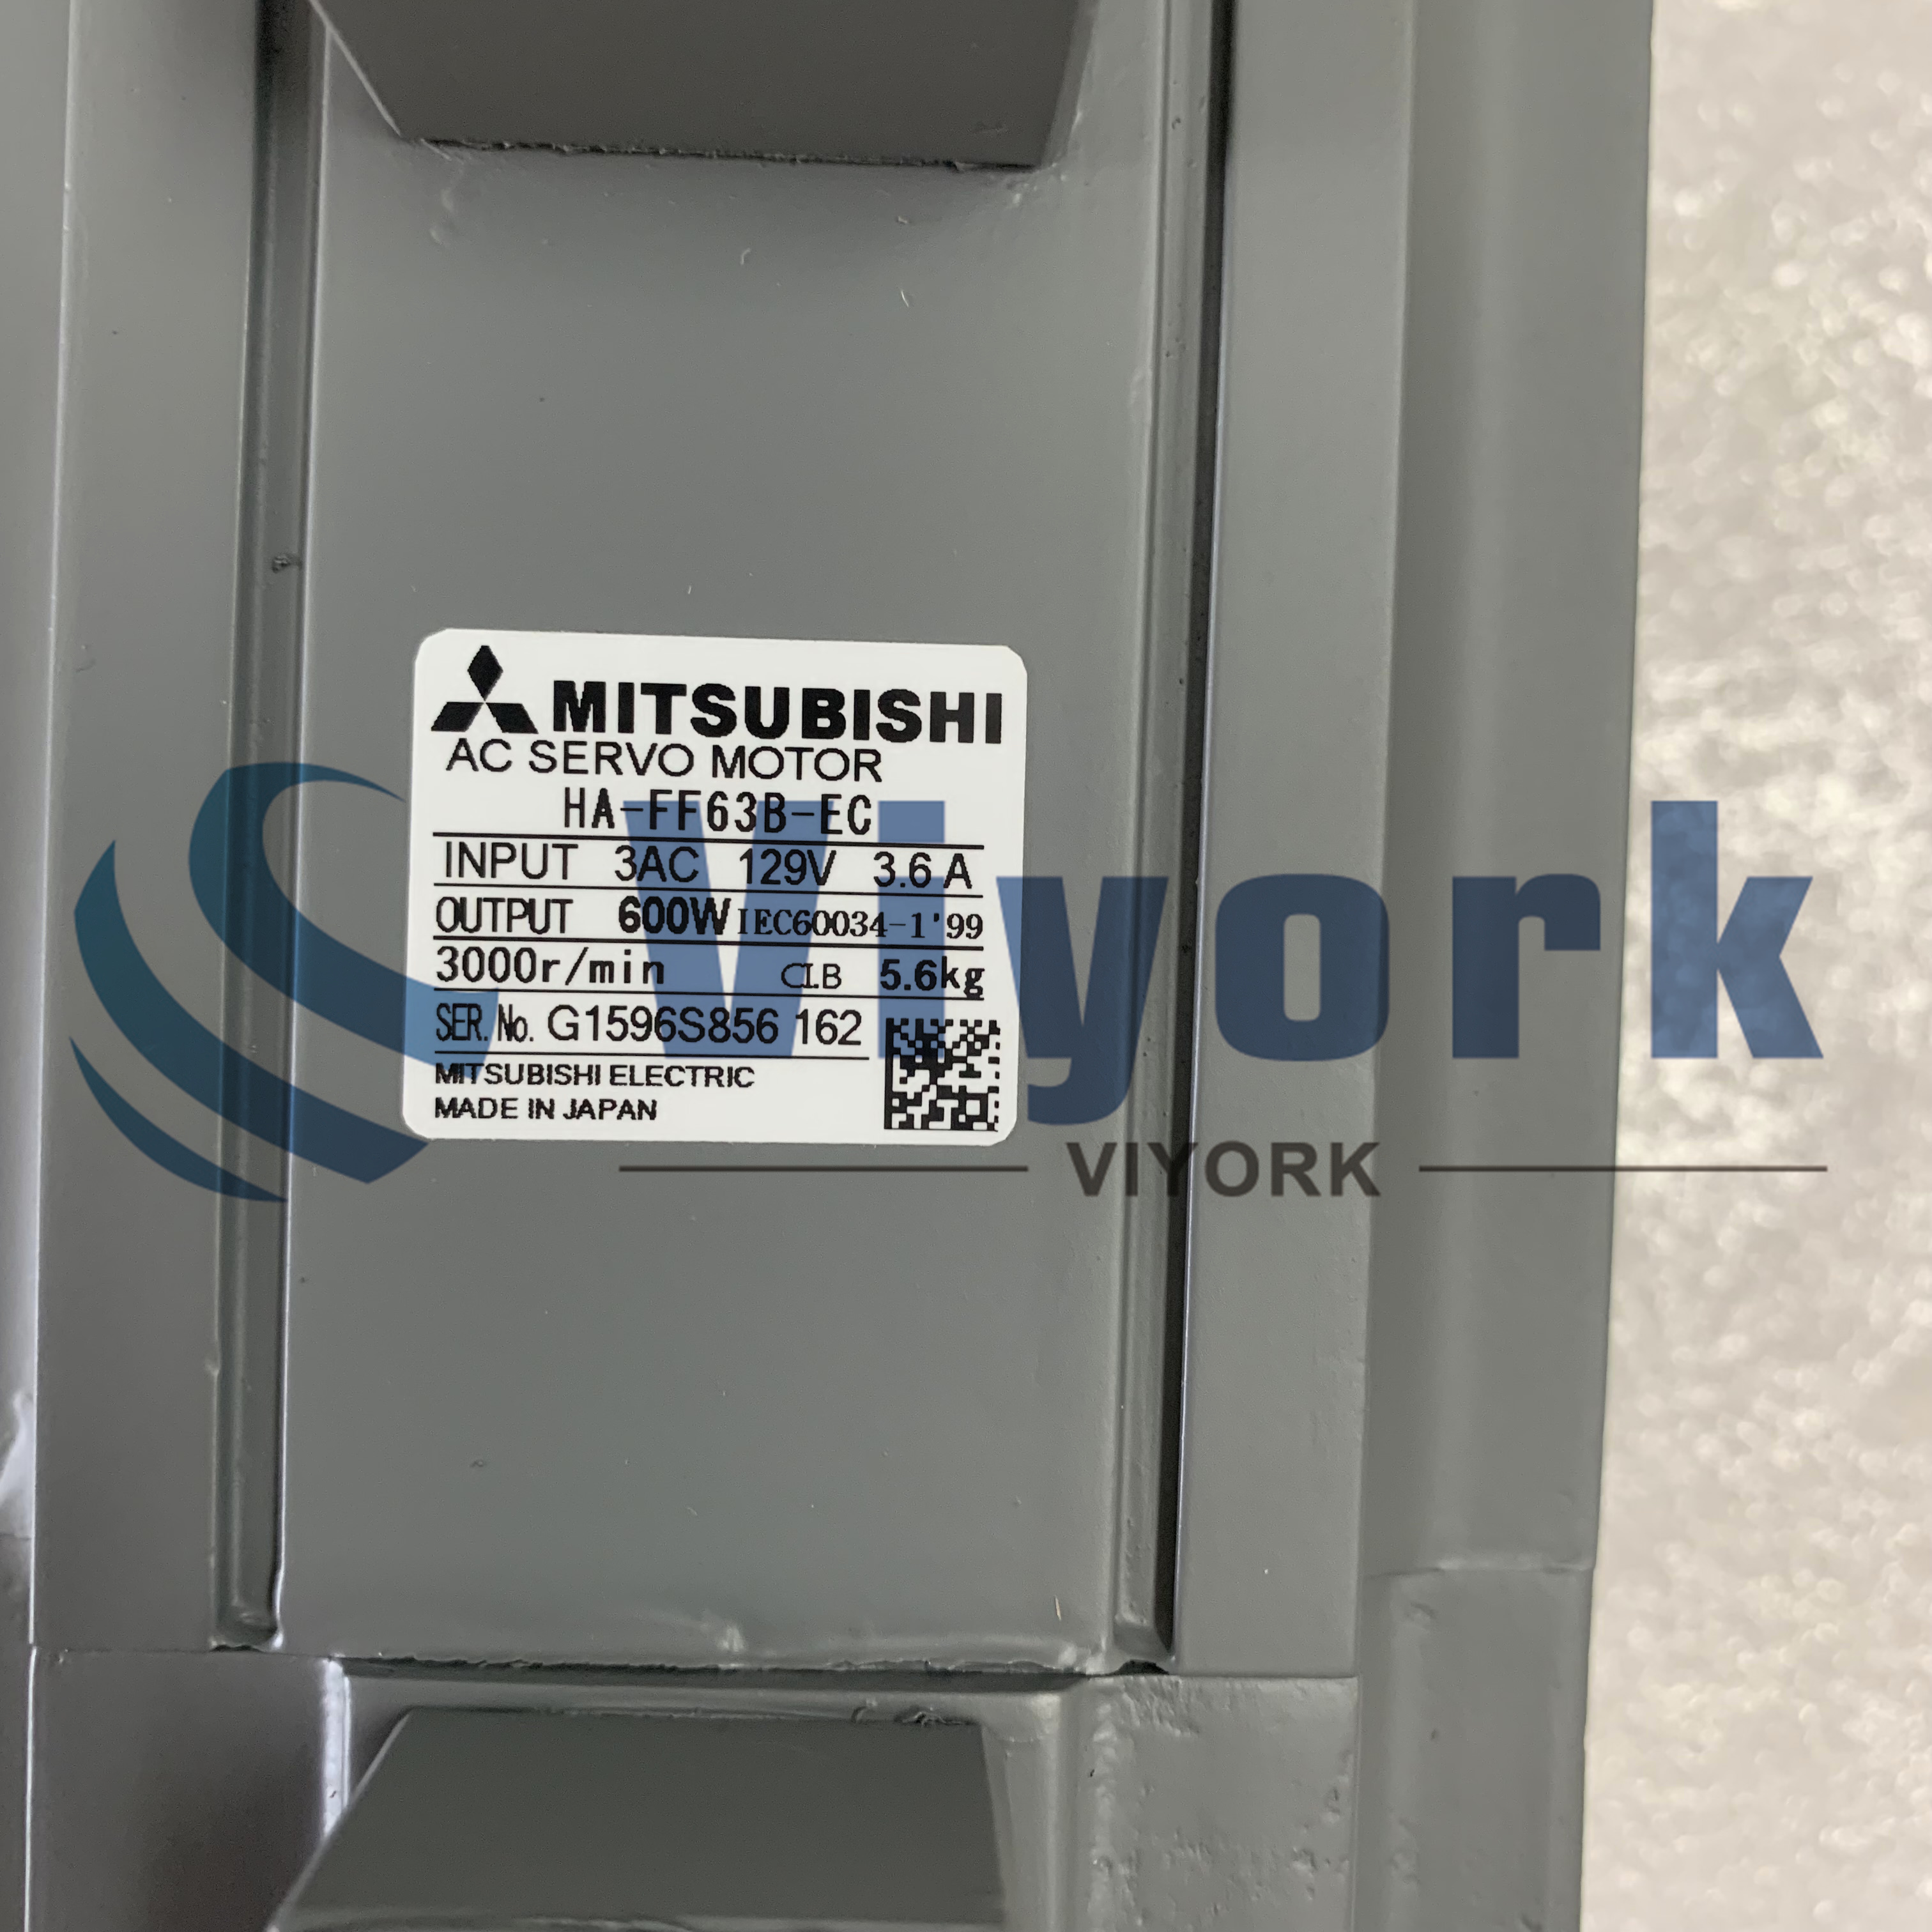 Mitsubishi HA-FF63B-EC AC SERVO MOTOR 3.6AMP 600W 3000RPM 129V NEW